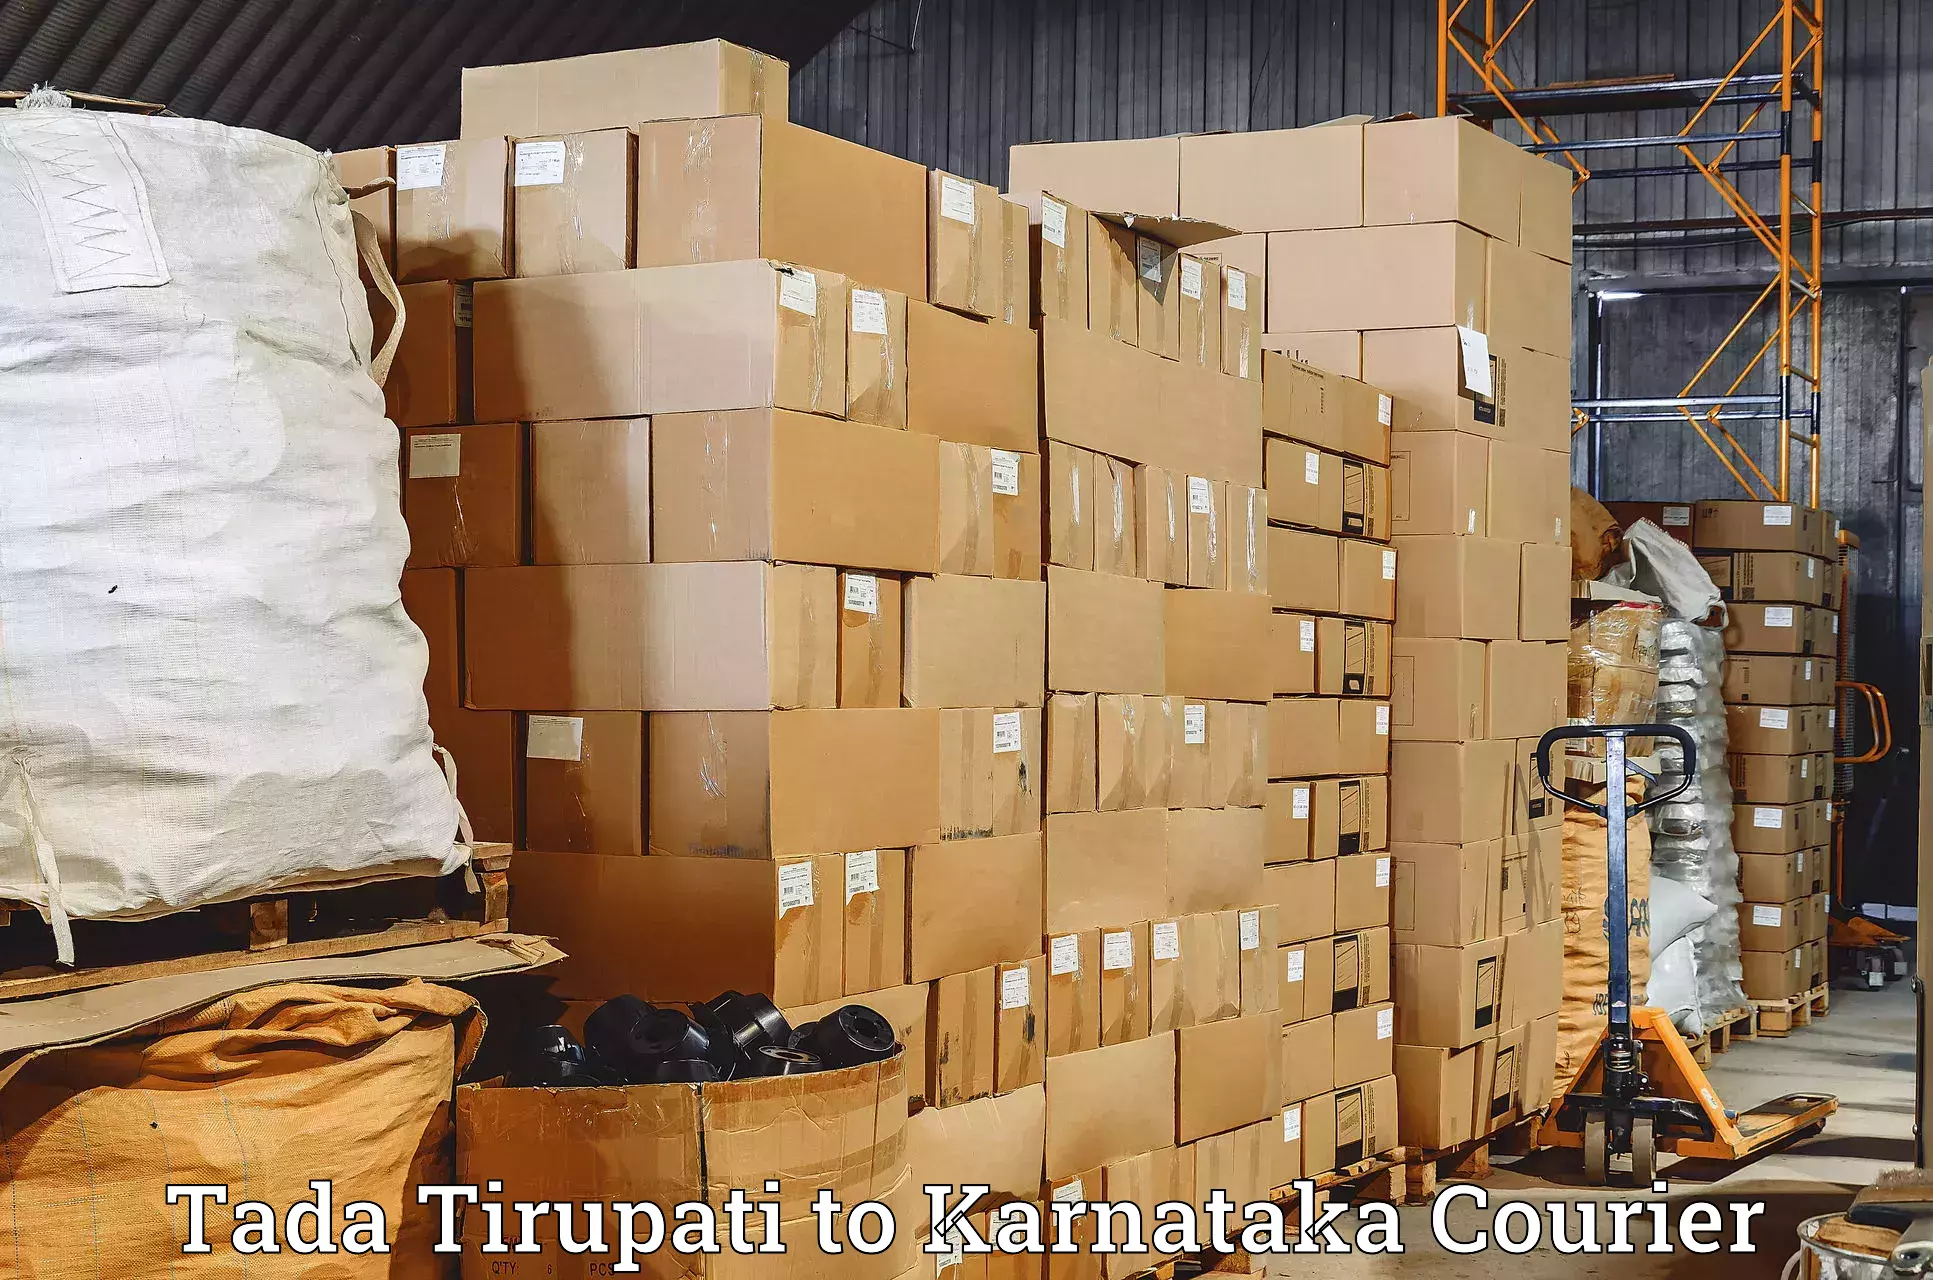 User-friendly delivery service Tada Tirupati to Dabaspet